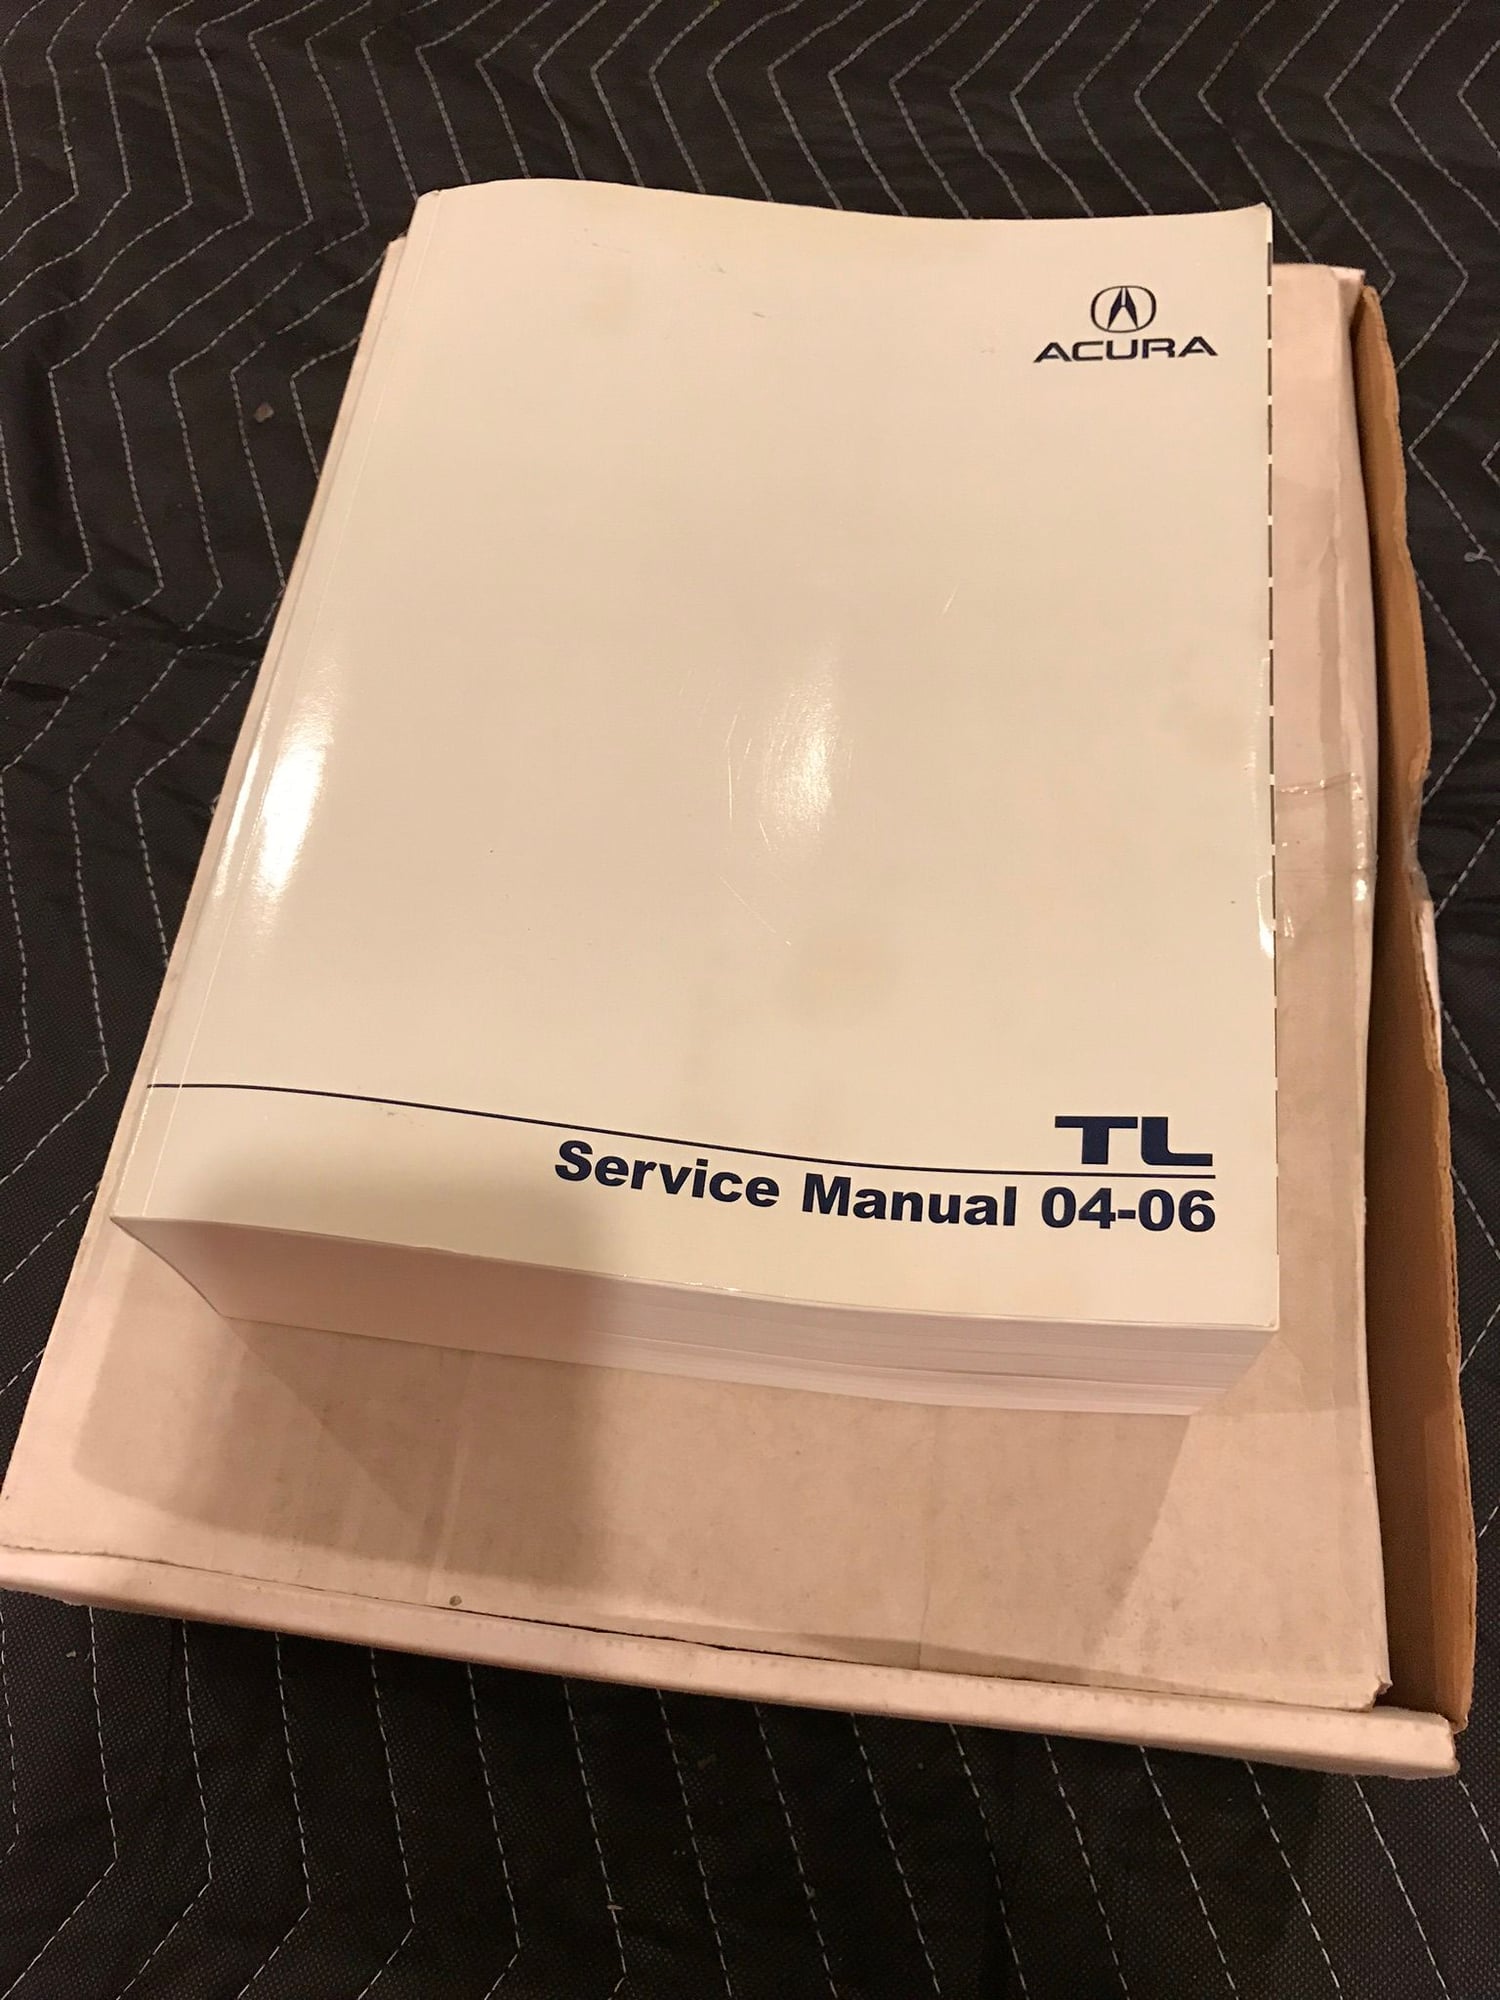 2008 Acura TL - 04-06 TL Service Manual - Miscellaneous - $80 - Rockford, IL 61103, United States